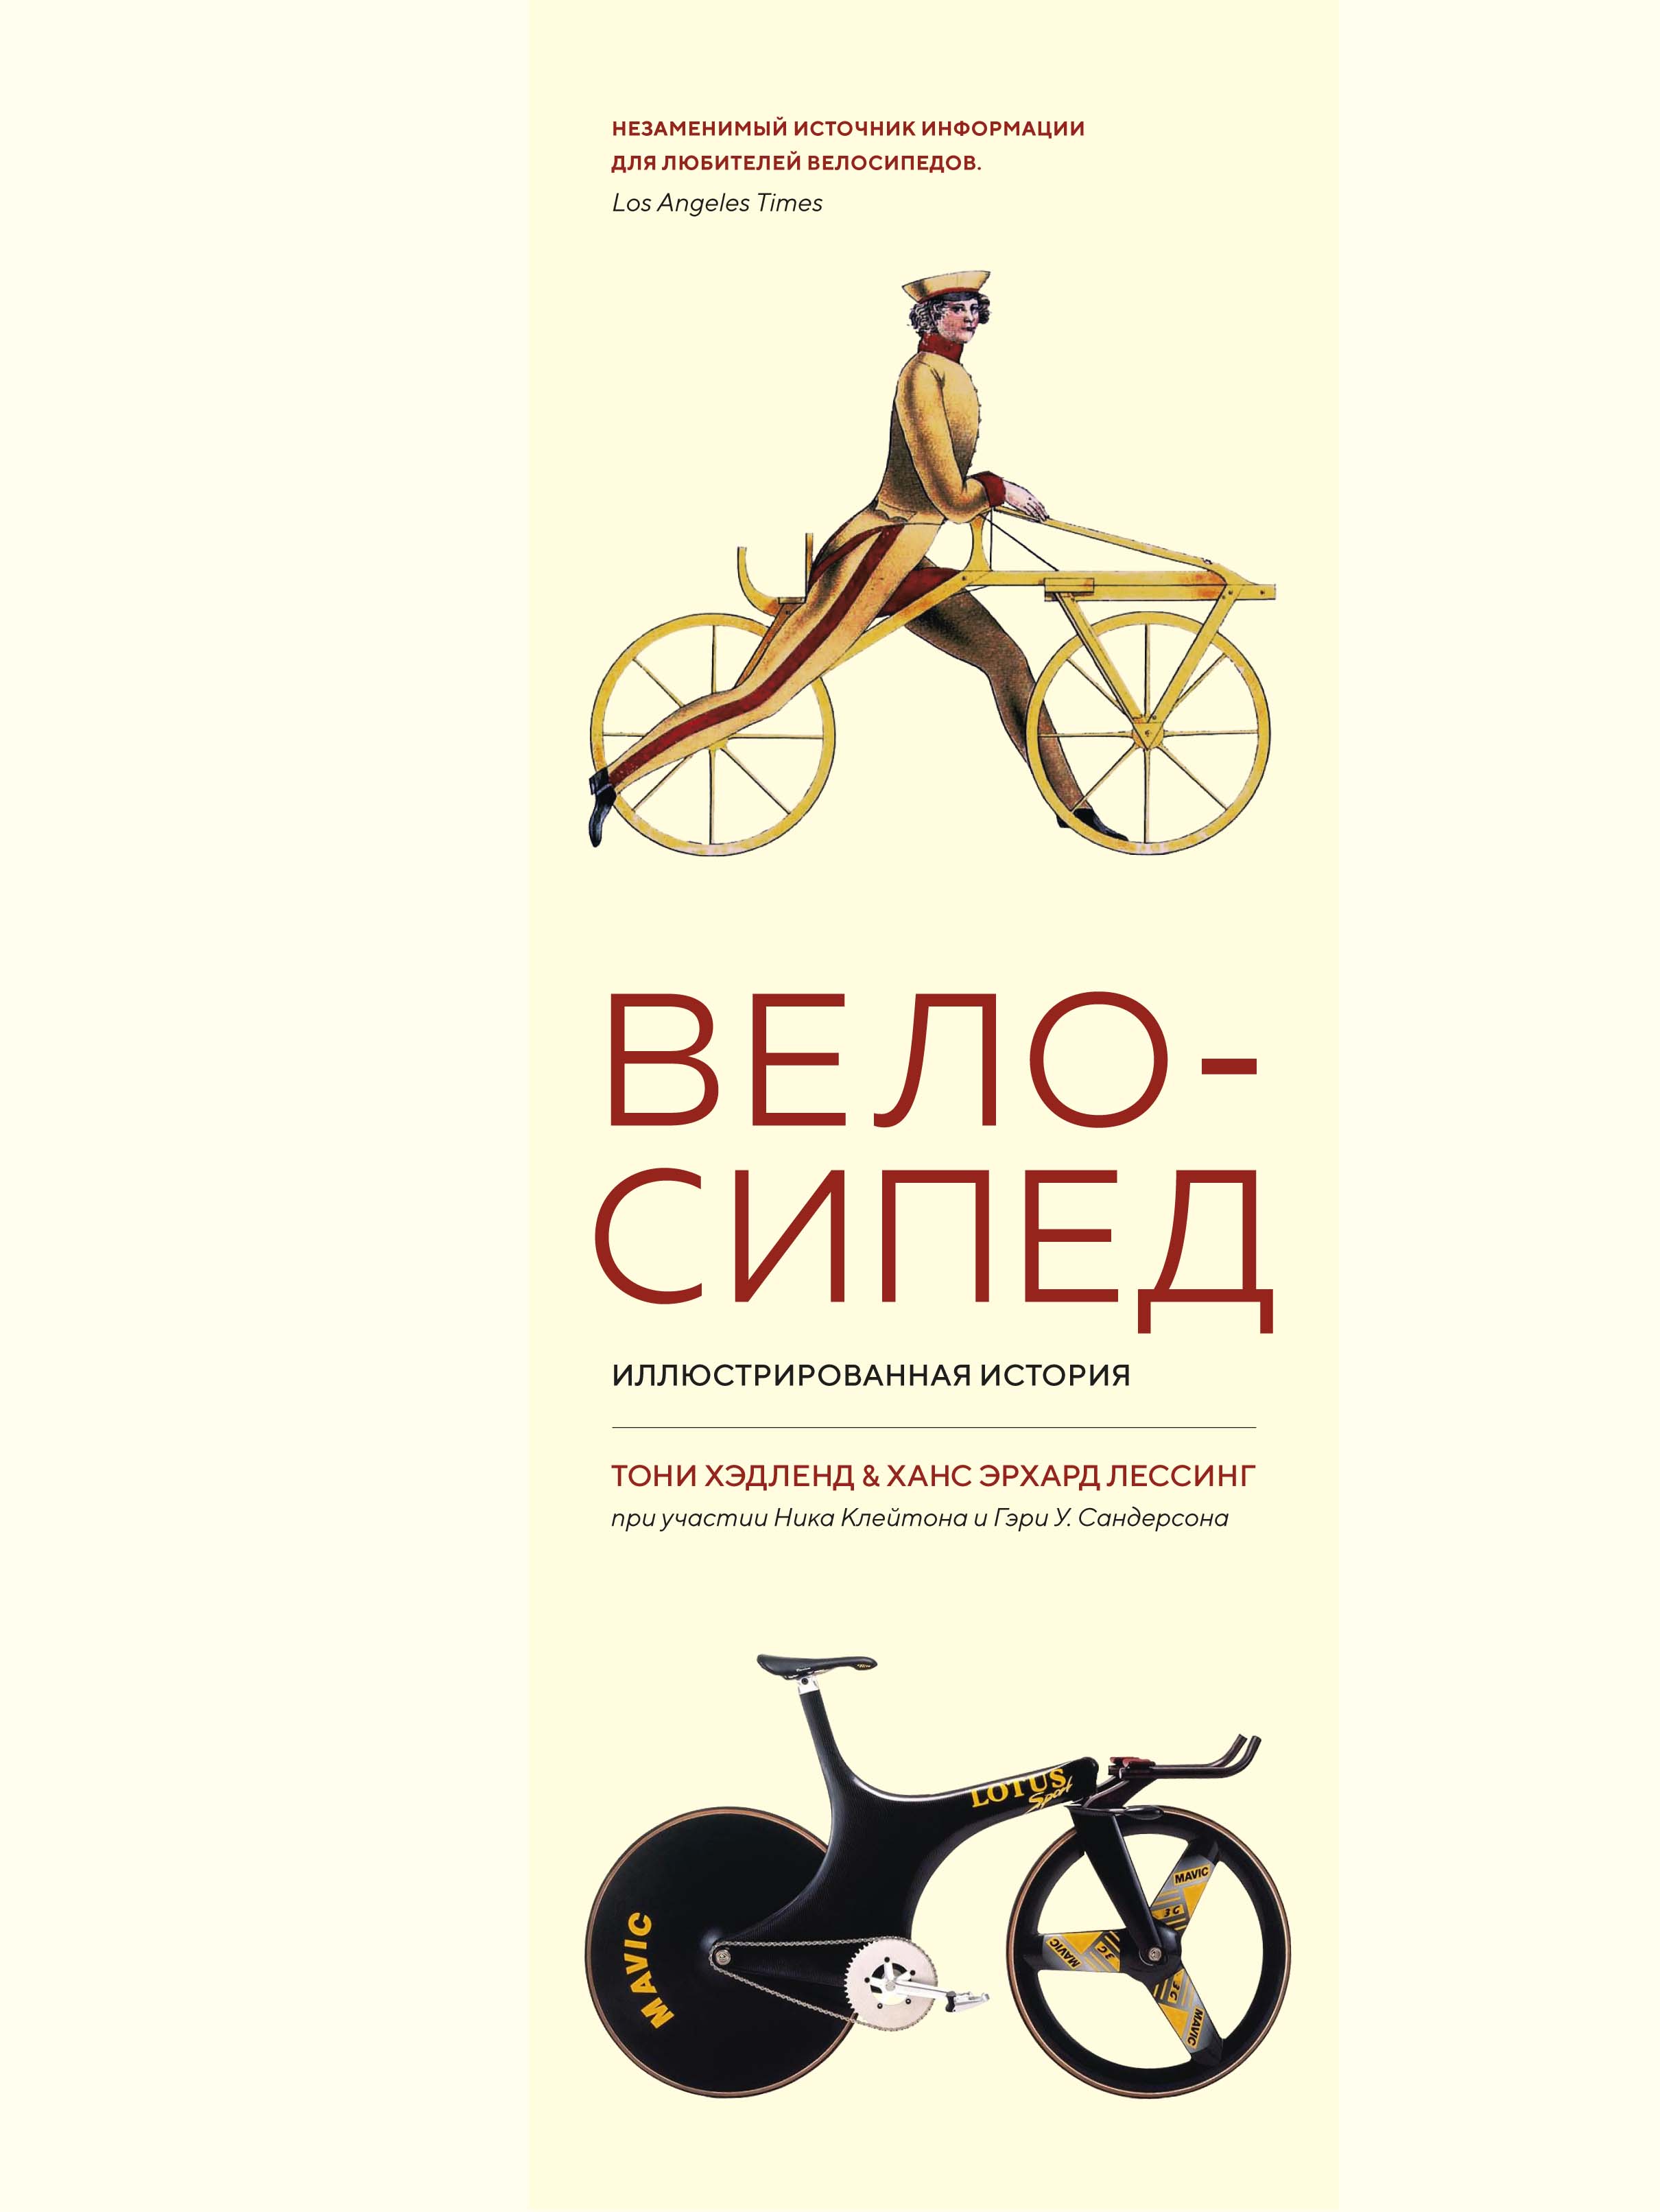 Велосипед. Иллюстрированная история монтеагудо сусана иллюстрированная история рока